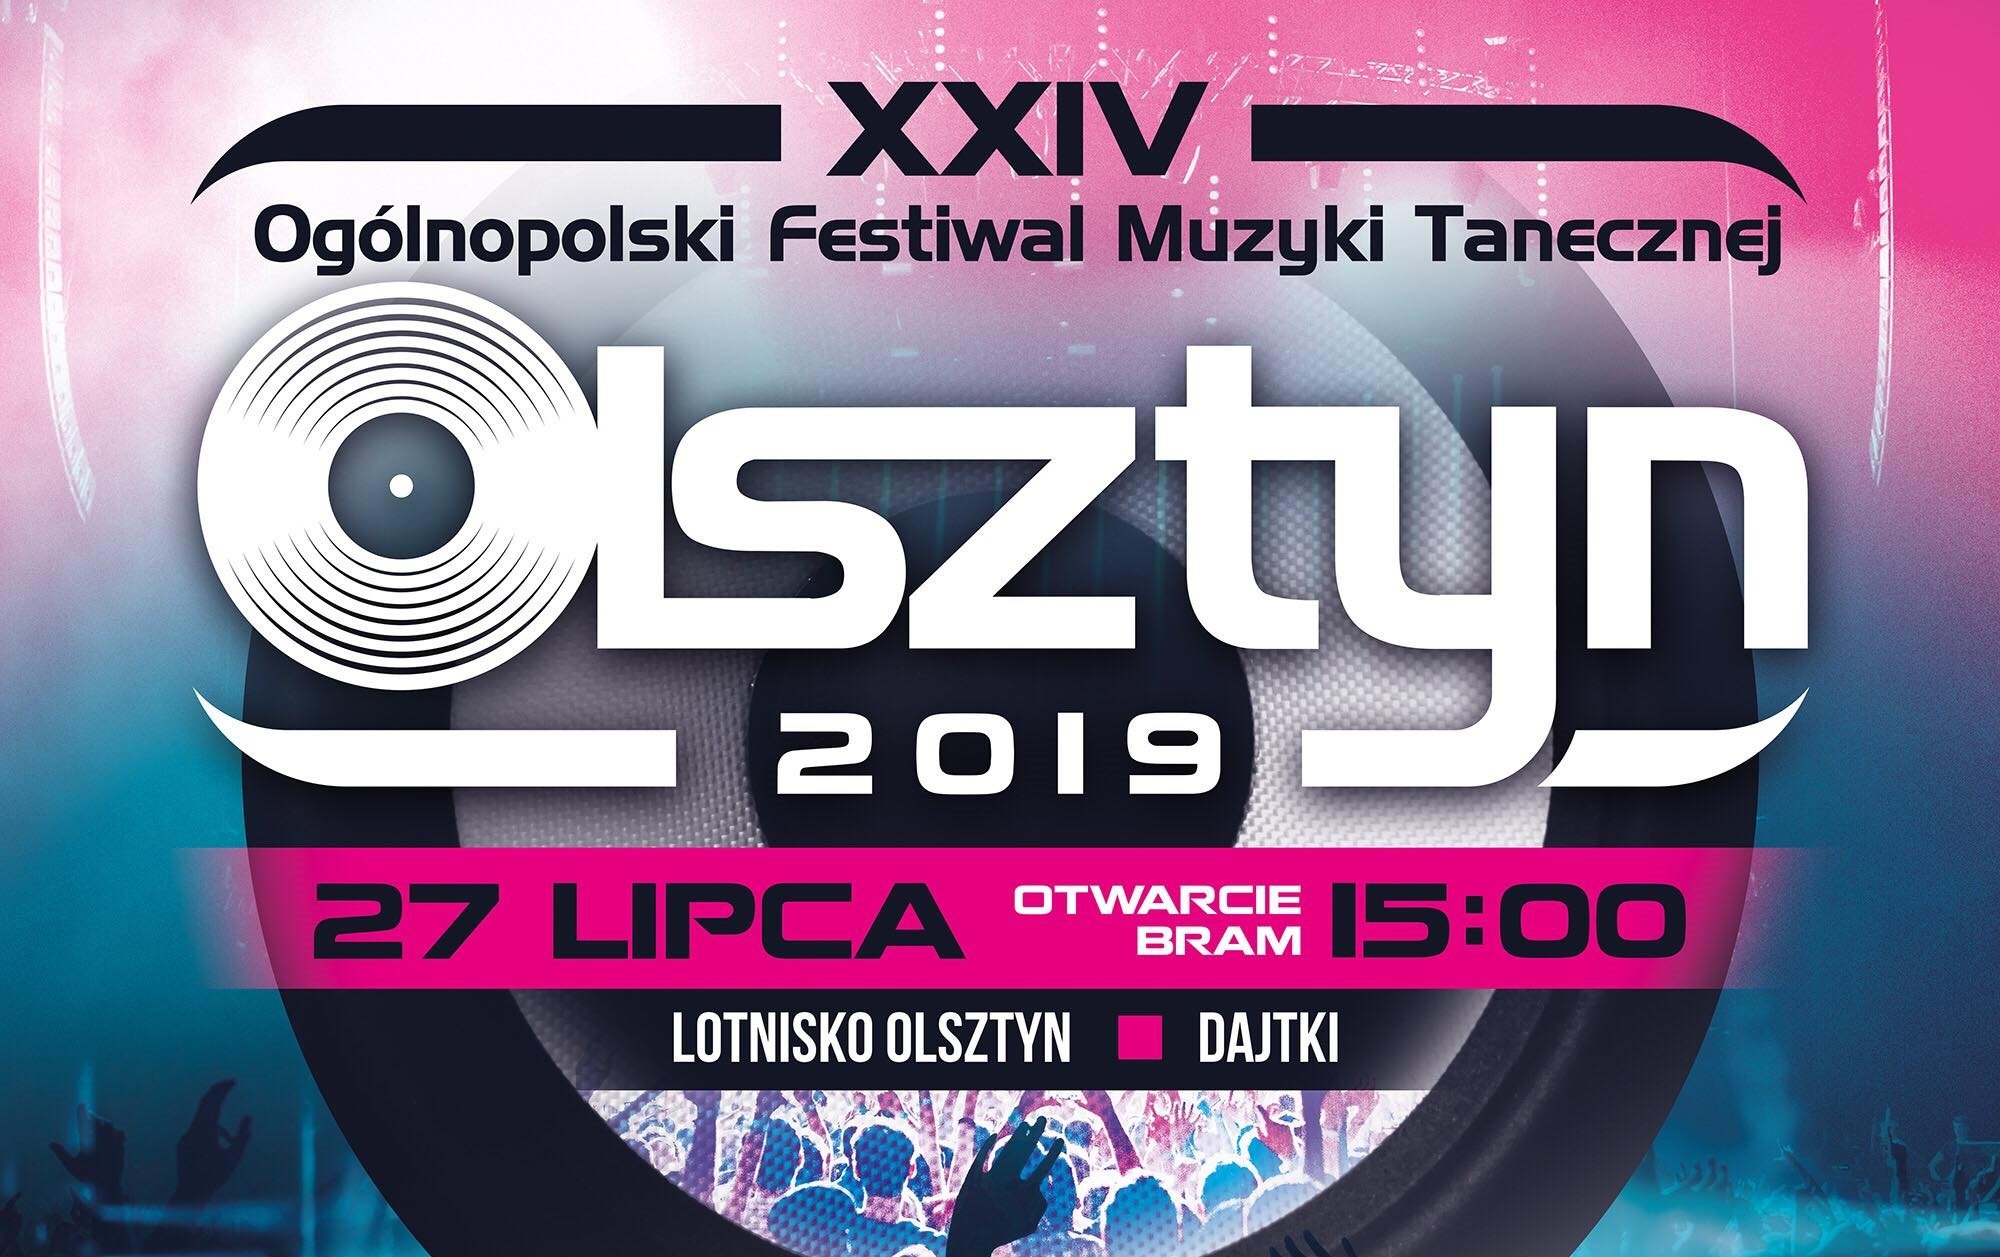 Już dziś Ogólnopolski Festiwal Muzyki Tanecznej - Olsztyn 2019! Gdzie oglądać największą imprezę disco polo? Lista wykonawców